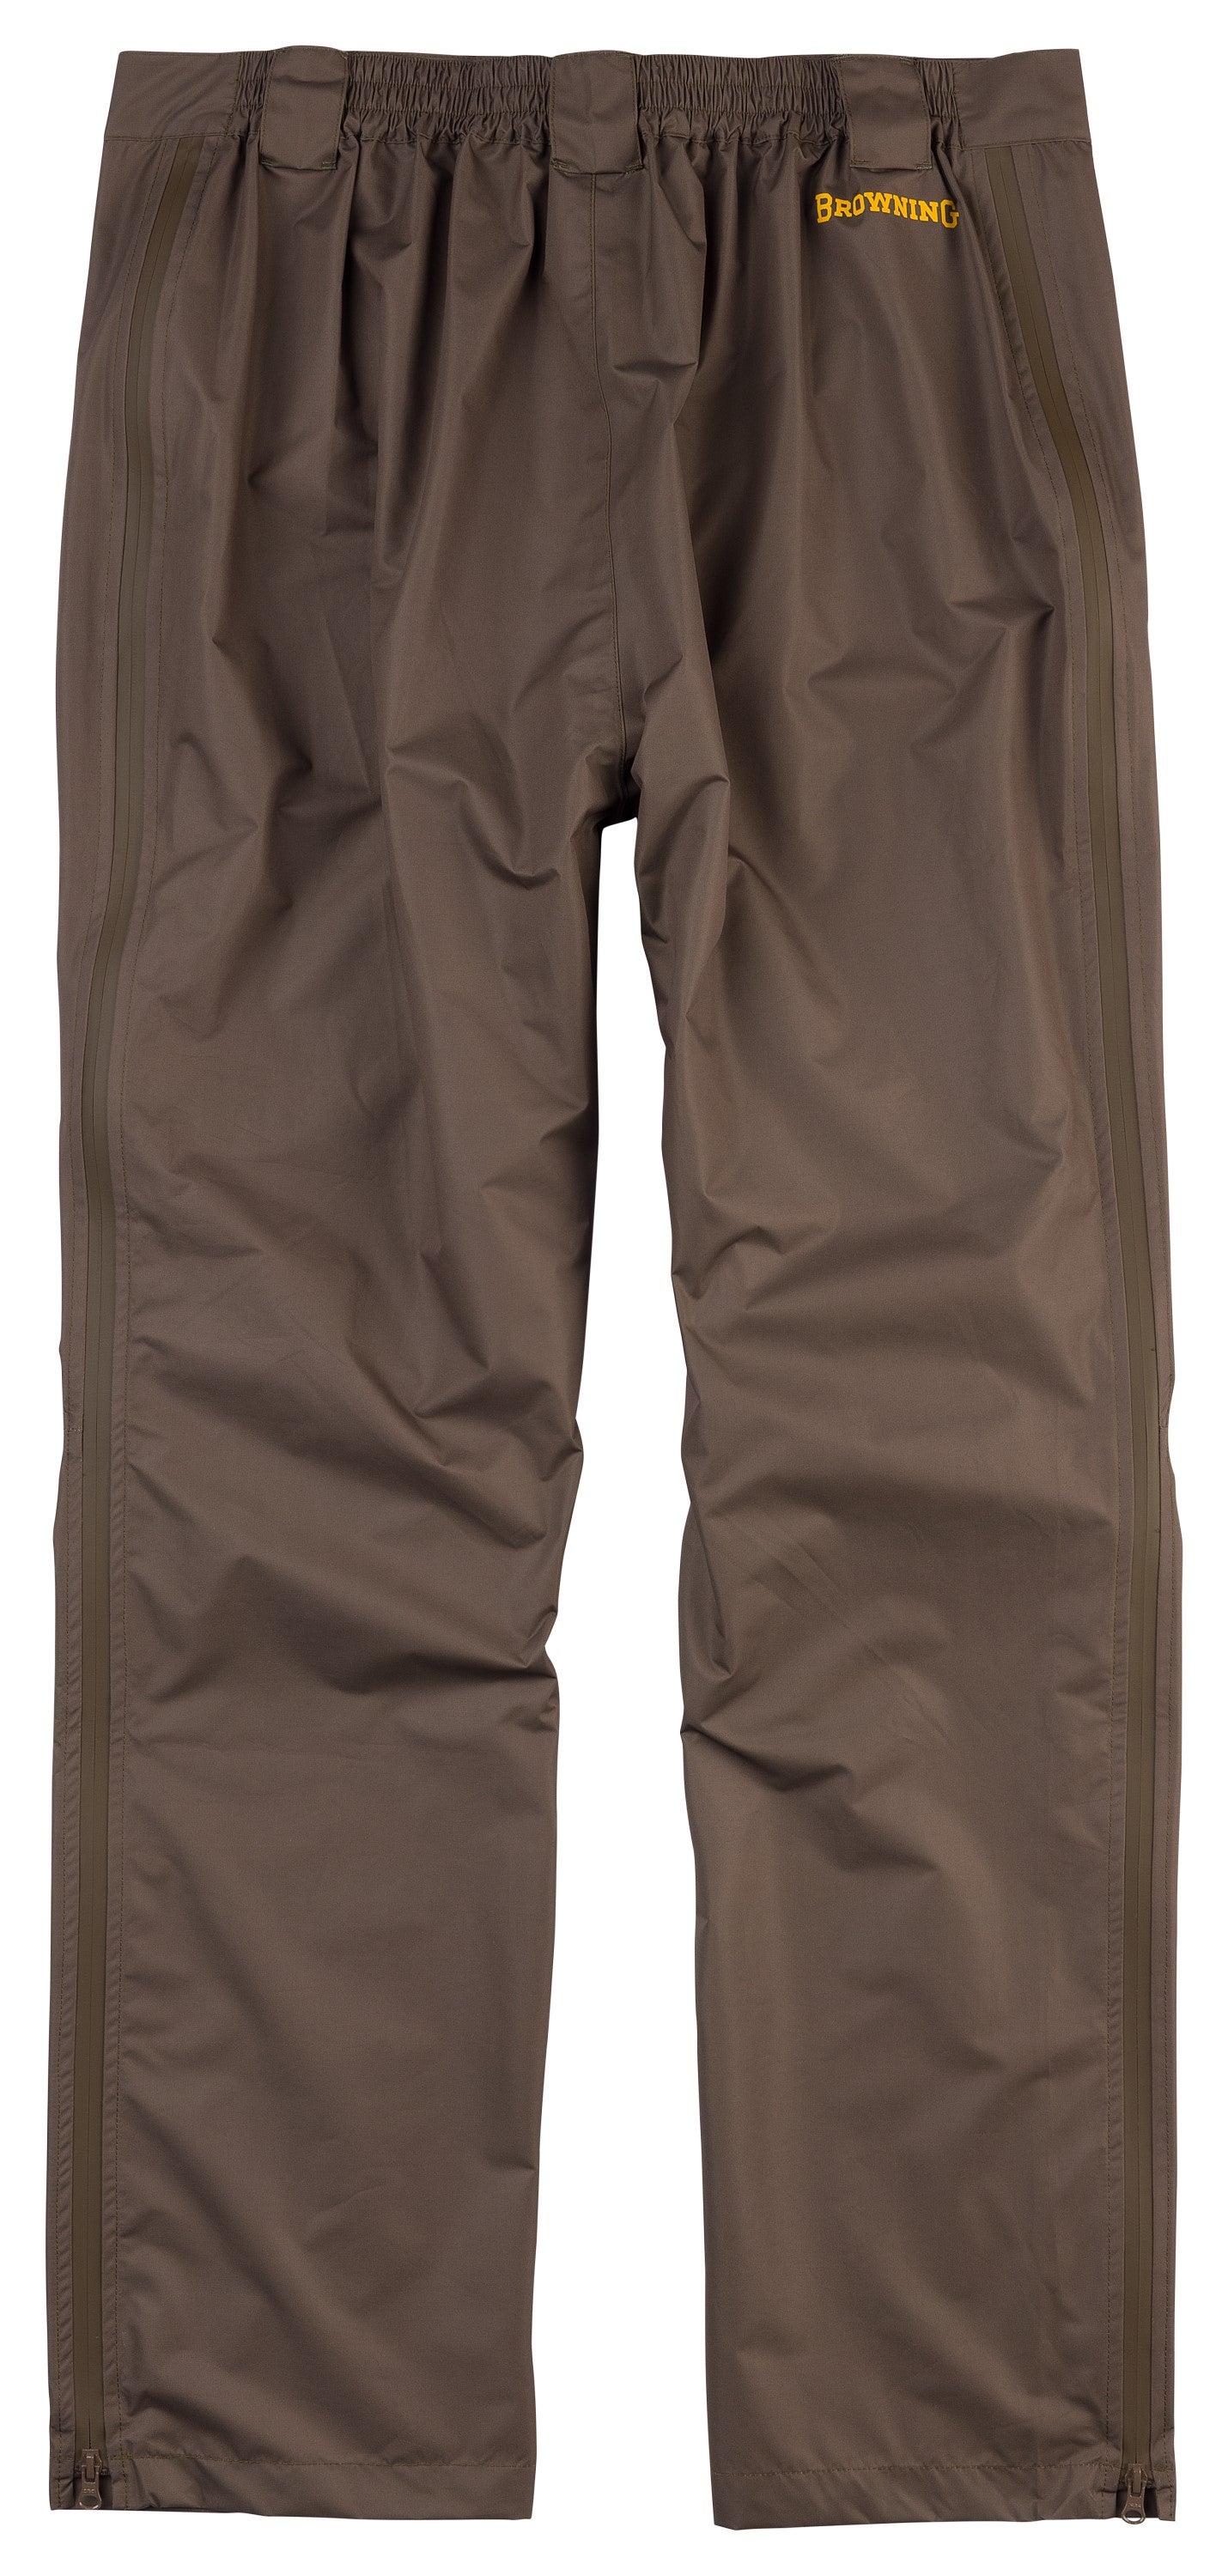 Kanawha Rain Pant - Hunting Clothing - Browning